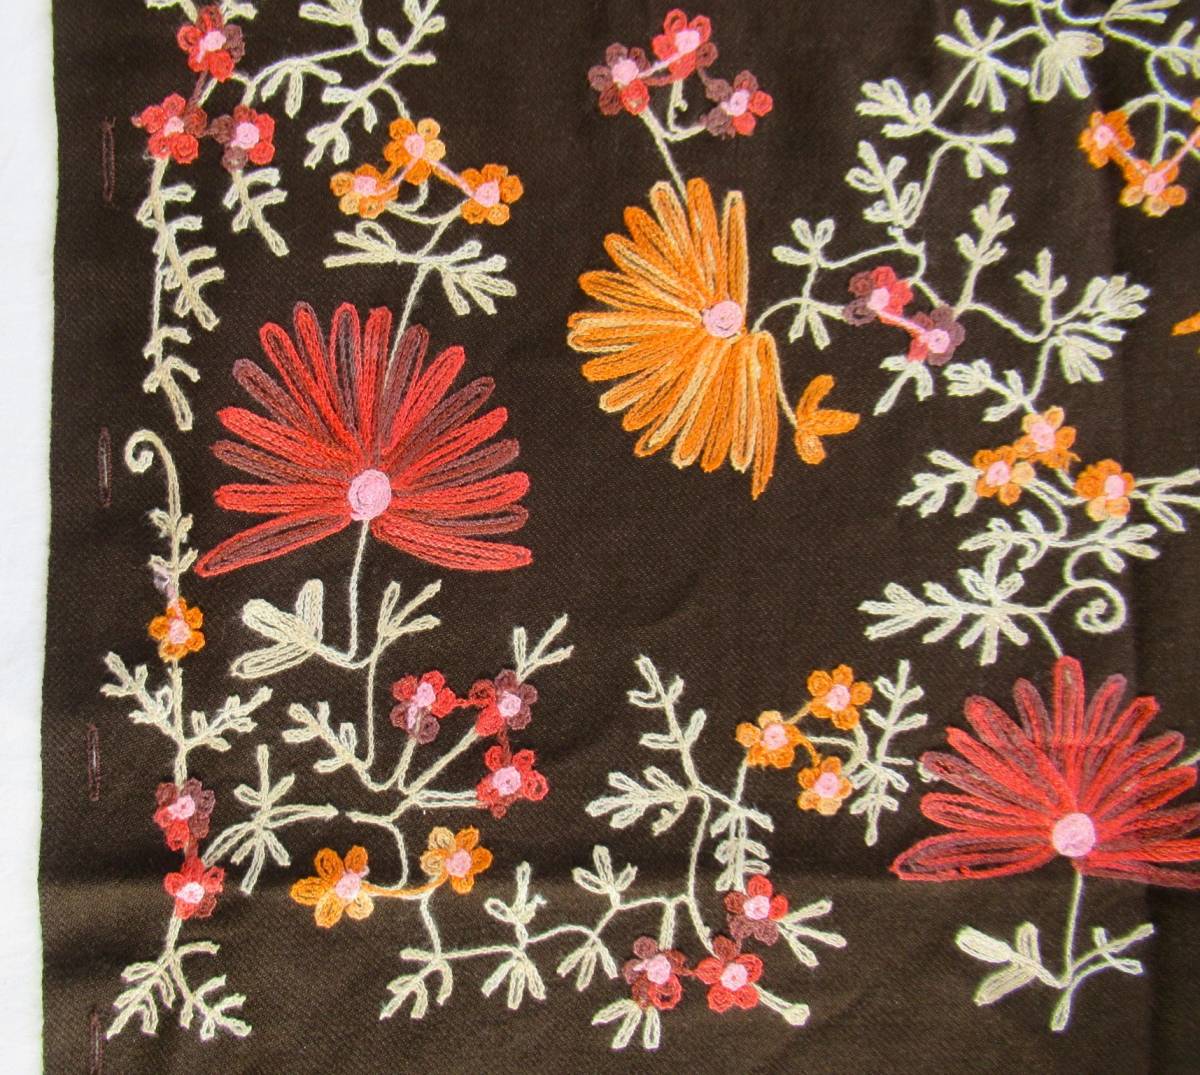 アジアン 茶系 花柄刺繍 大判 ストール インド製 マフラー スカーフ アジア エスニック_画像3